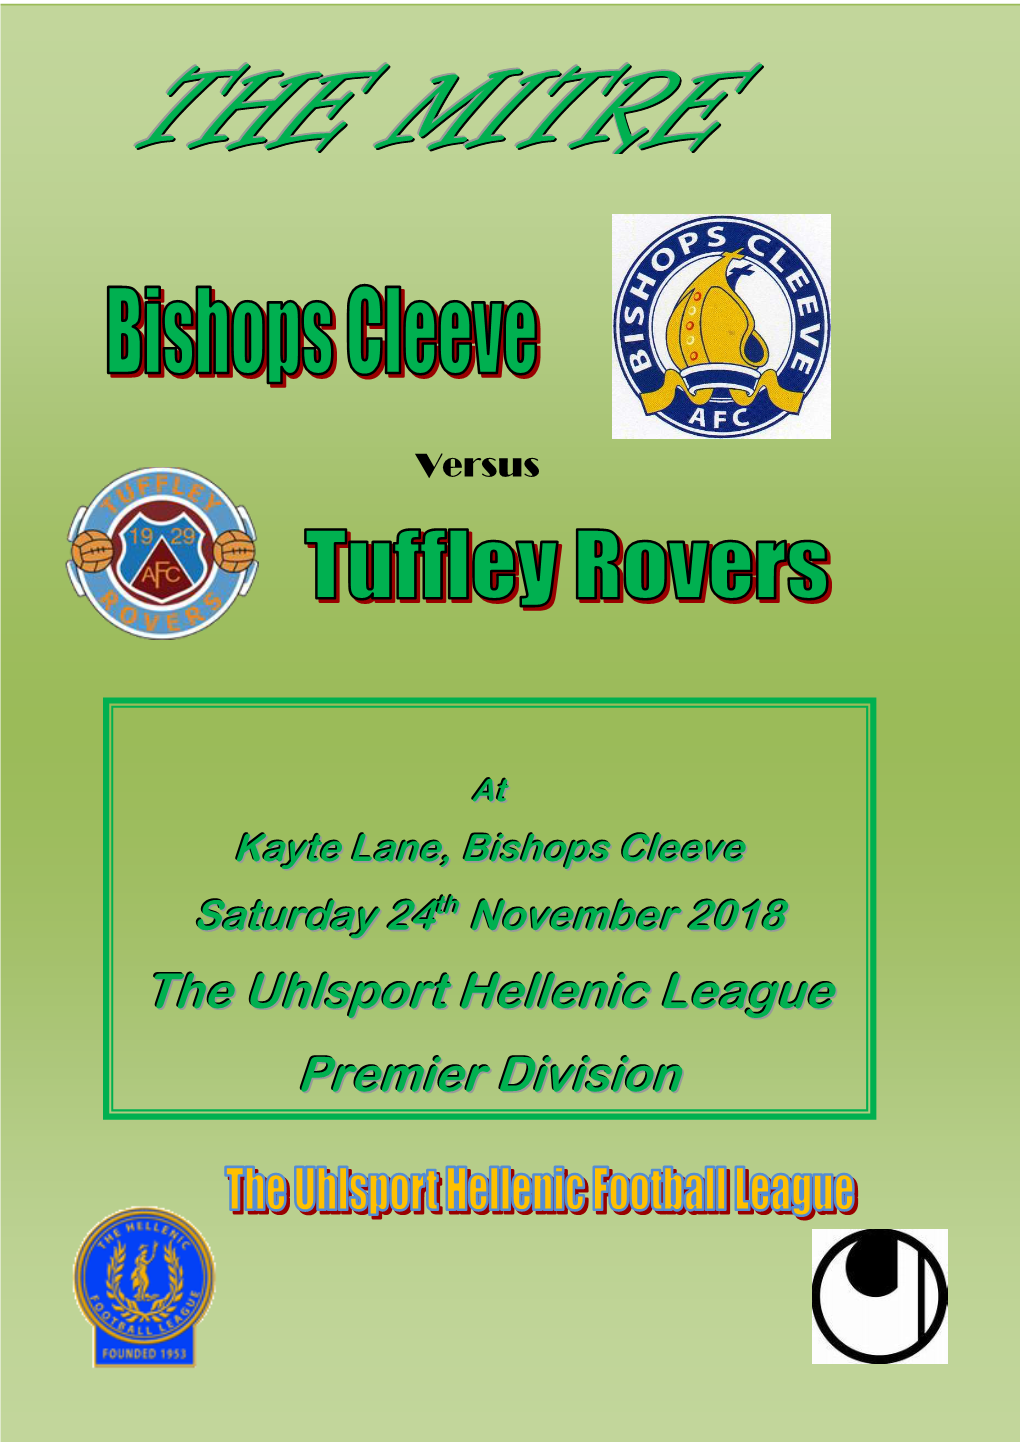 The Uhlsport Hellenic League Premier Division